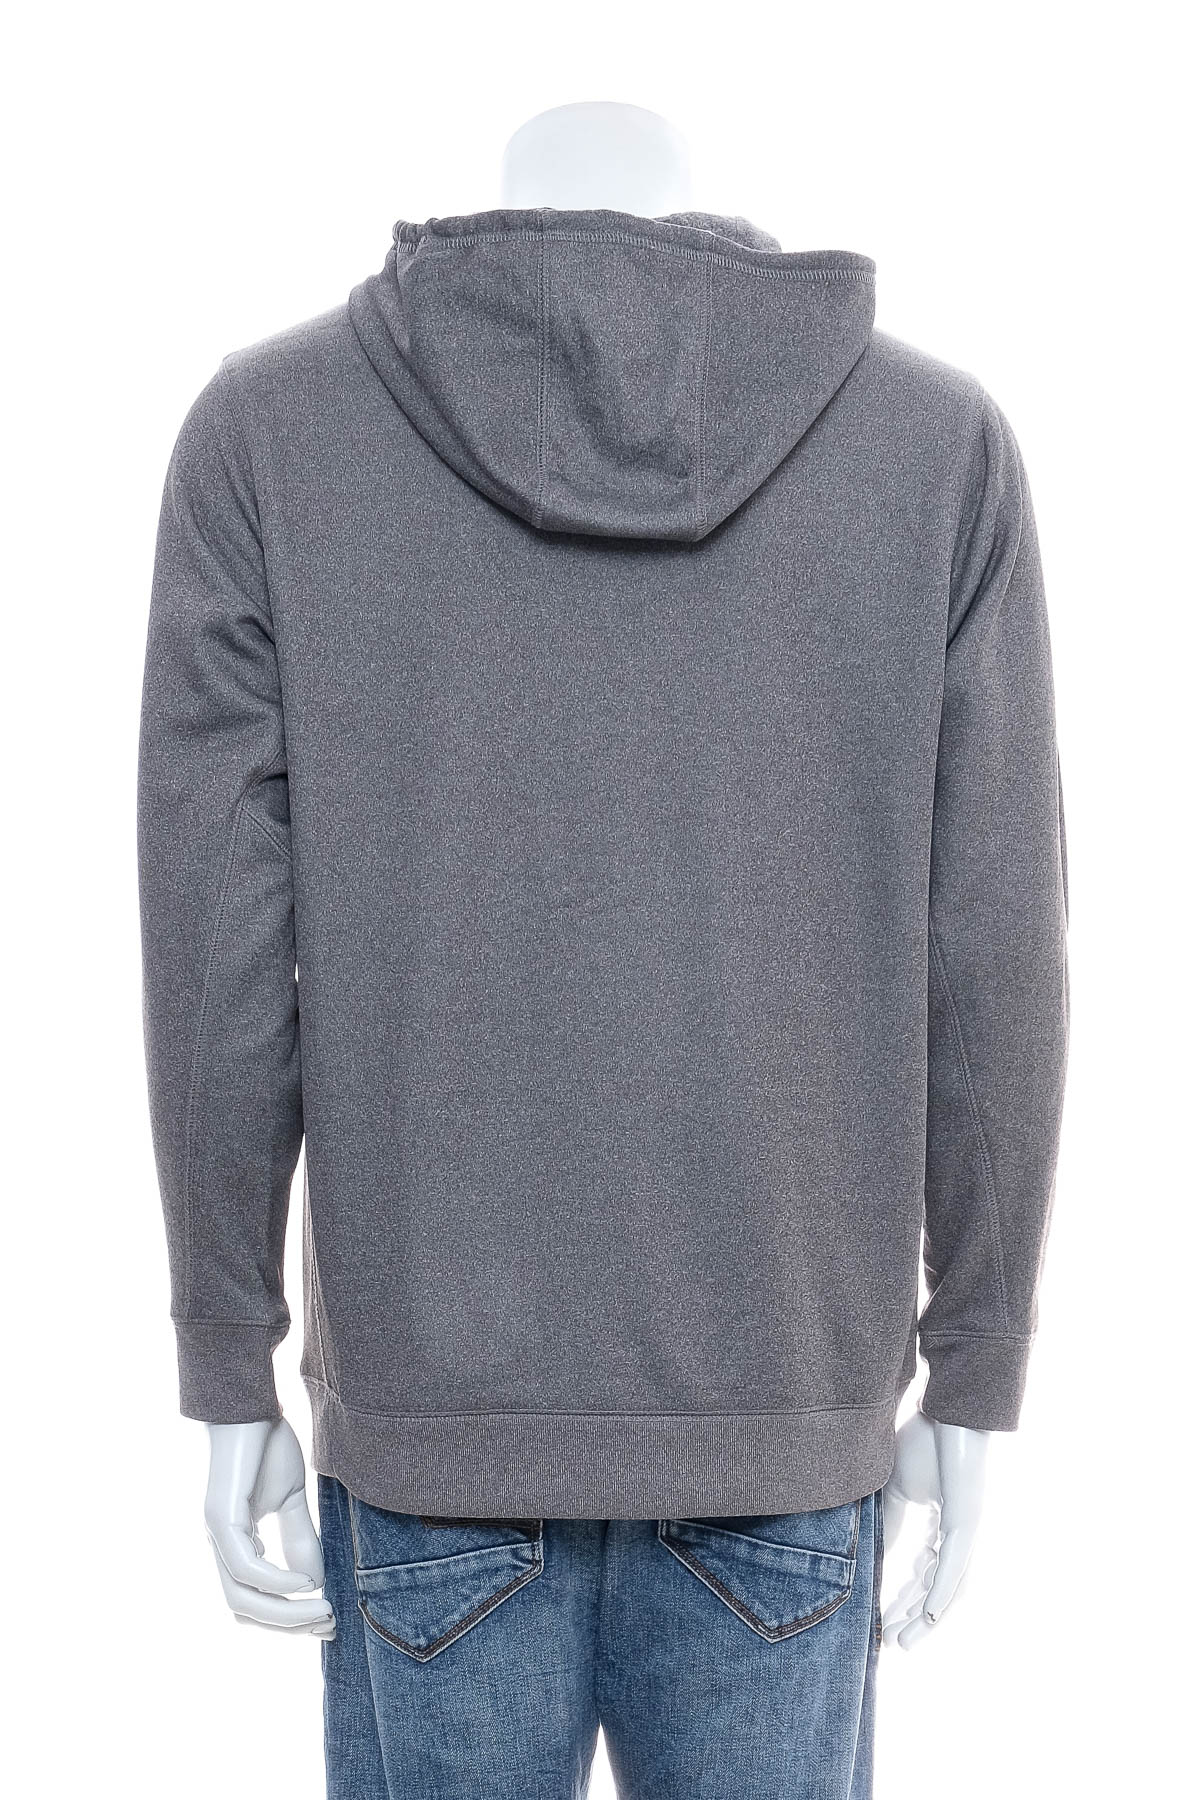 Men's sweatshirt - BSN - 1